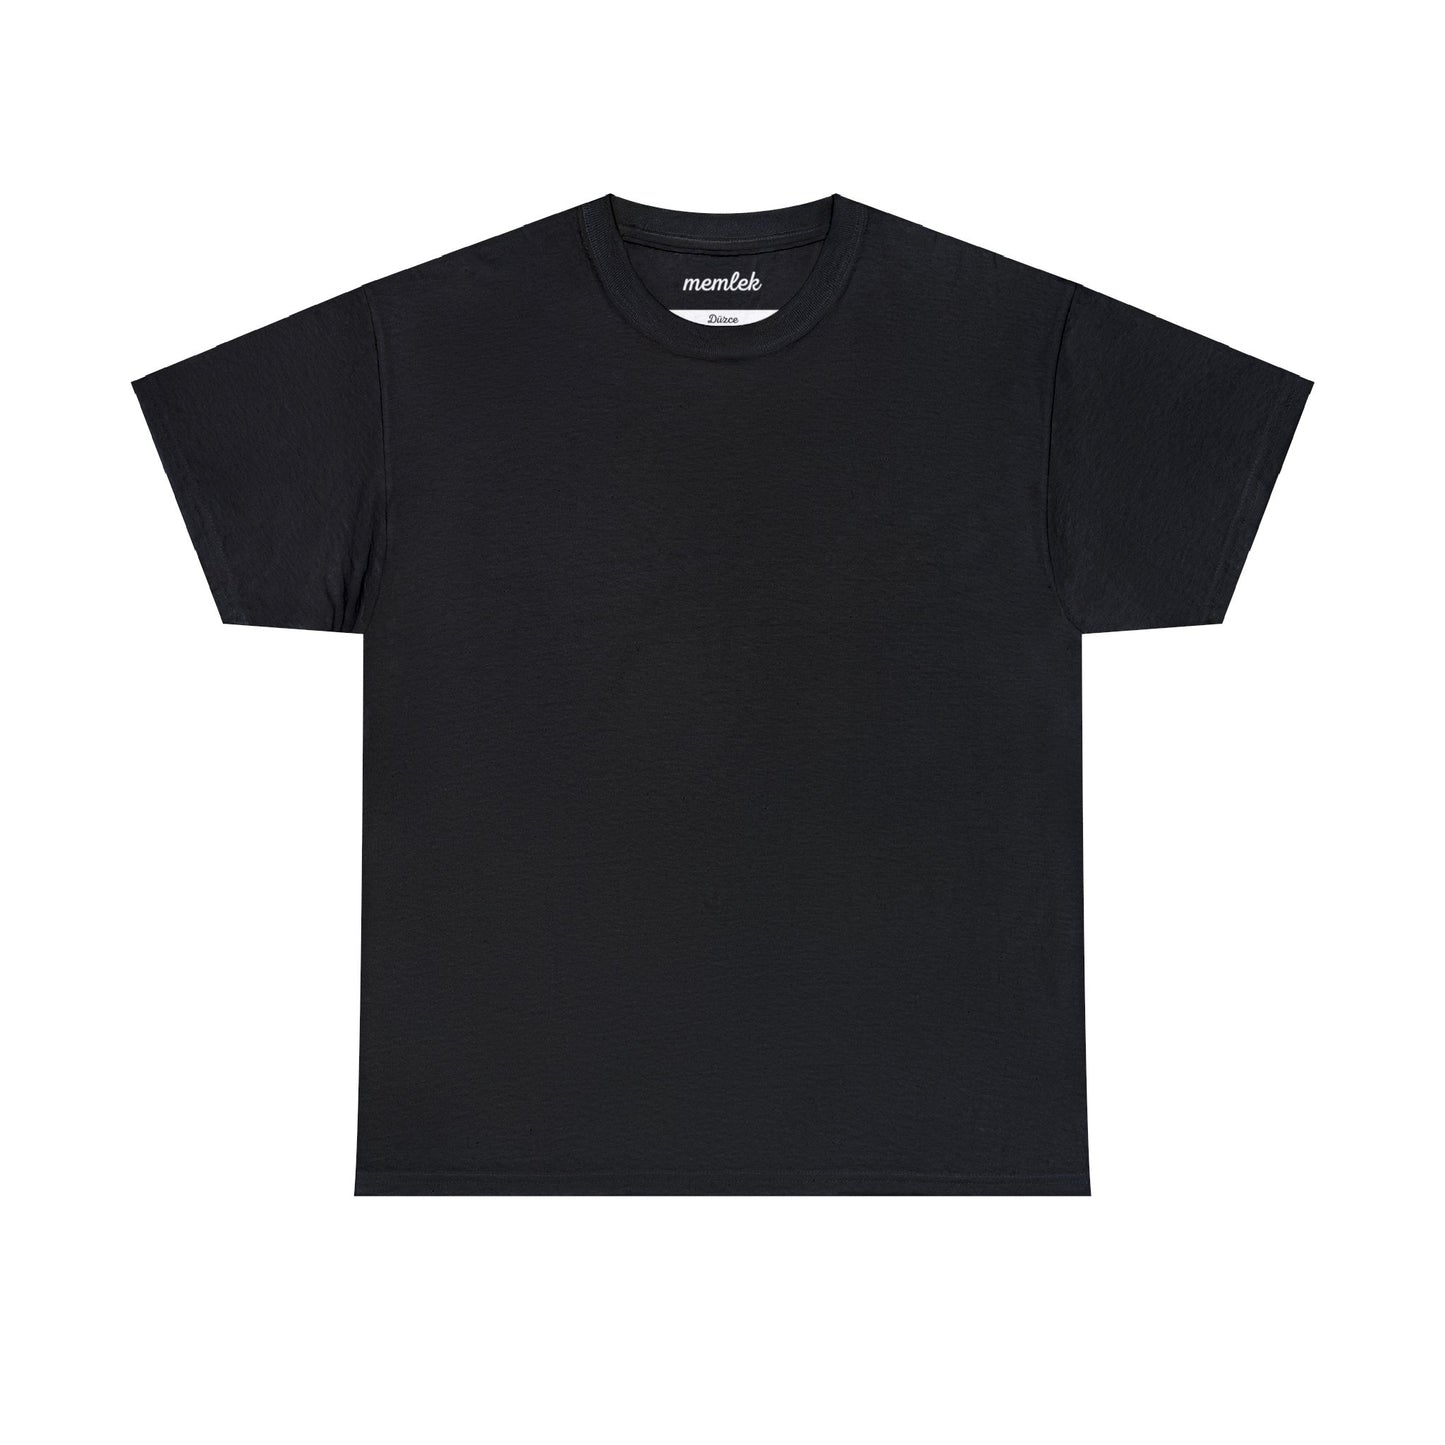 Kurt - 81 Düzce - T-Shirt - Back Print - Black/White